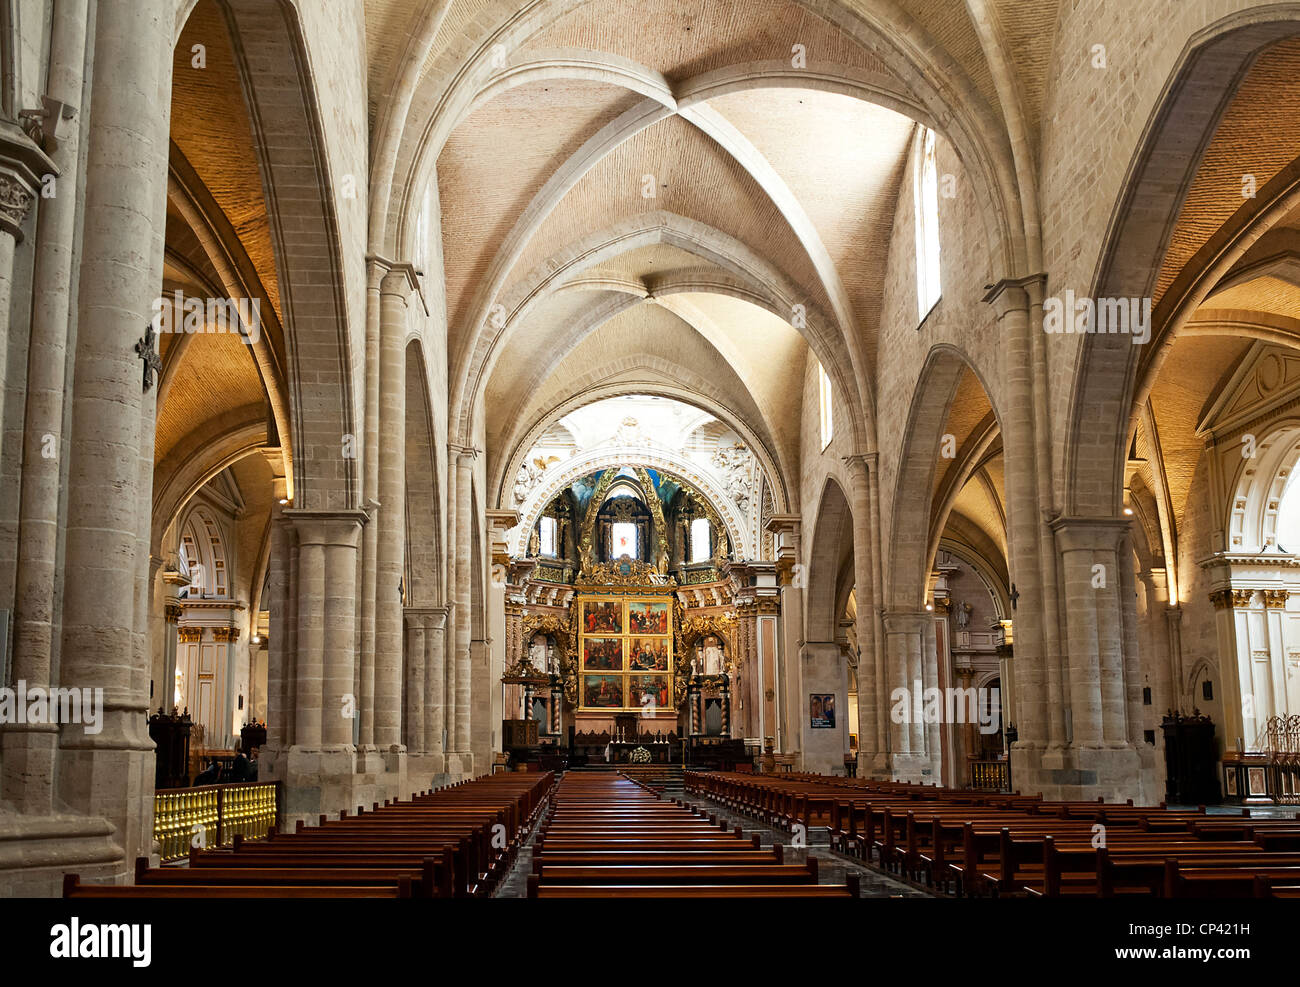 Nef à l'intérieur de la cathédrale de Valence Espagne Banque D'Images